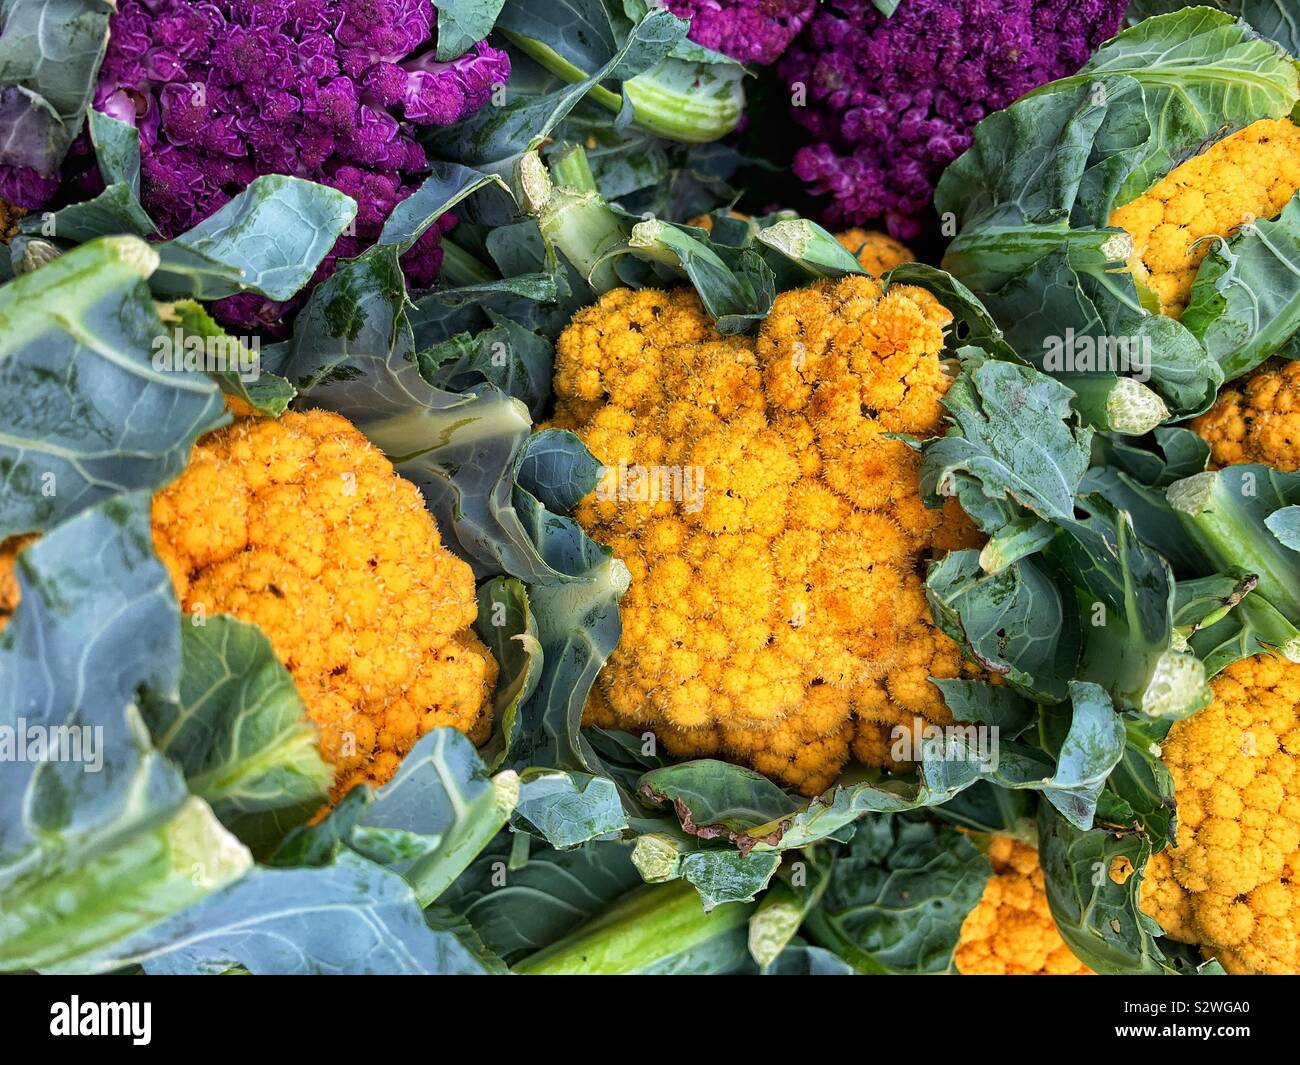 Yellow cauliflower heads. Stock Photo